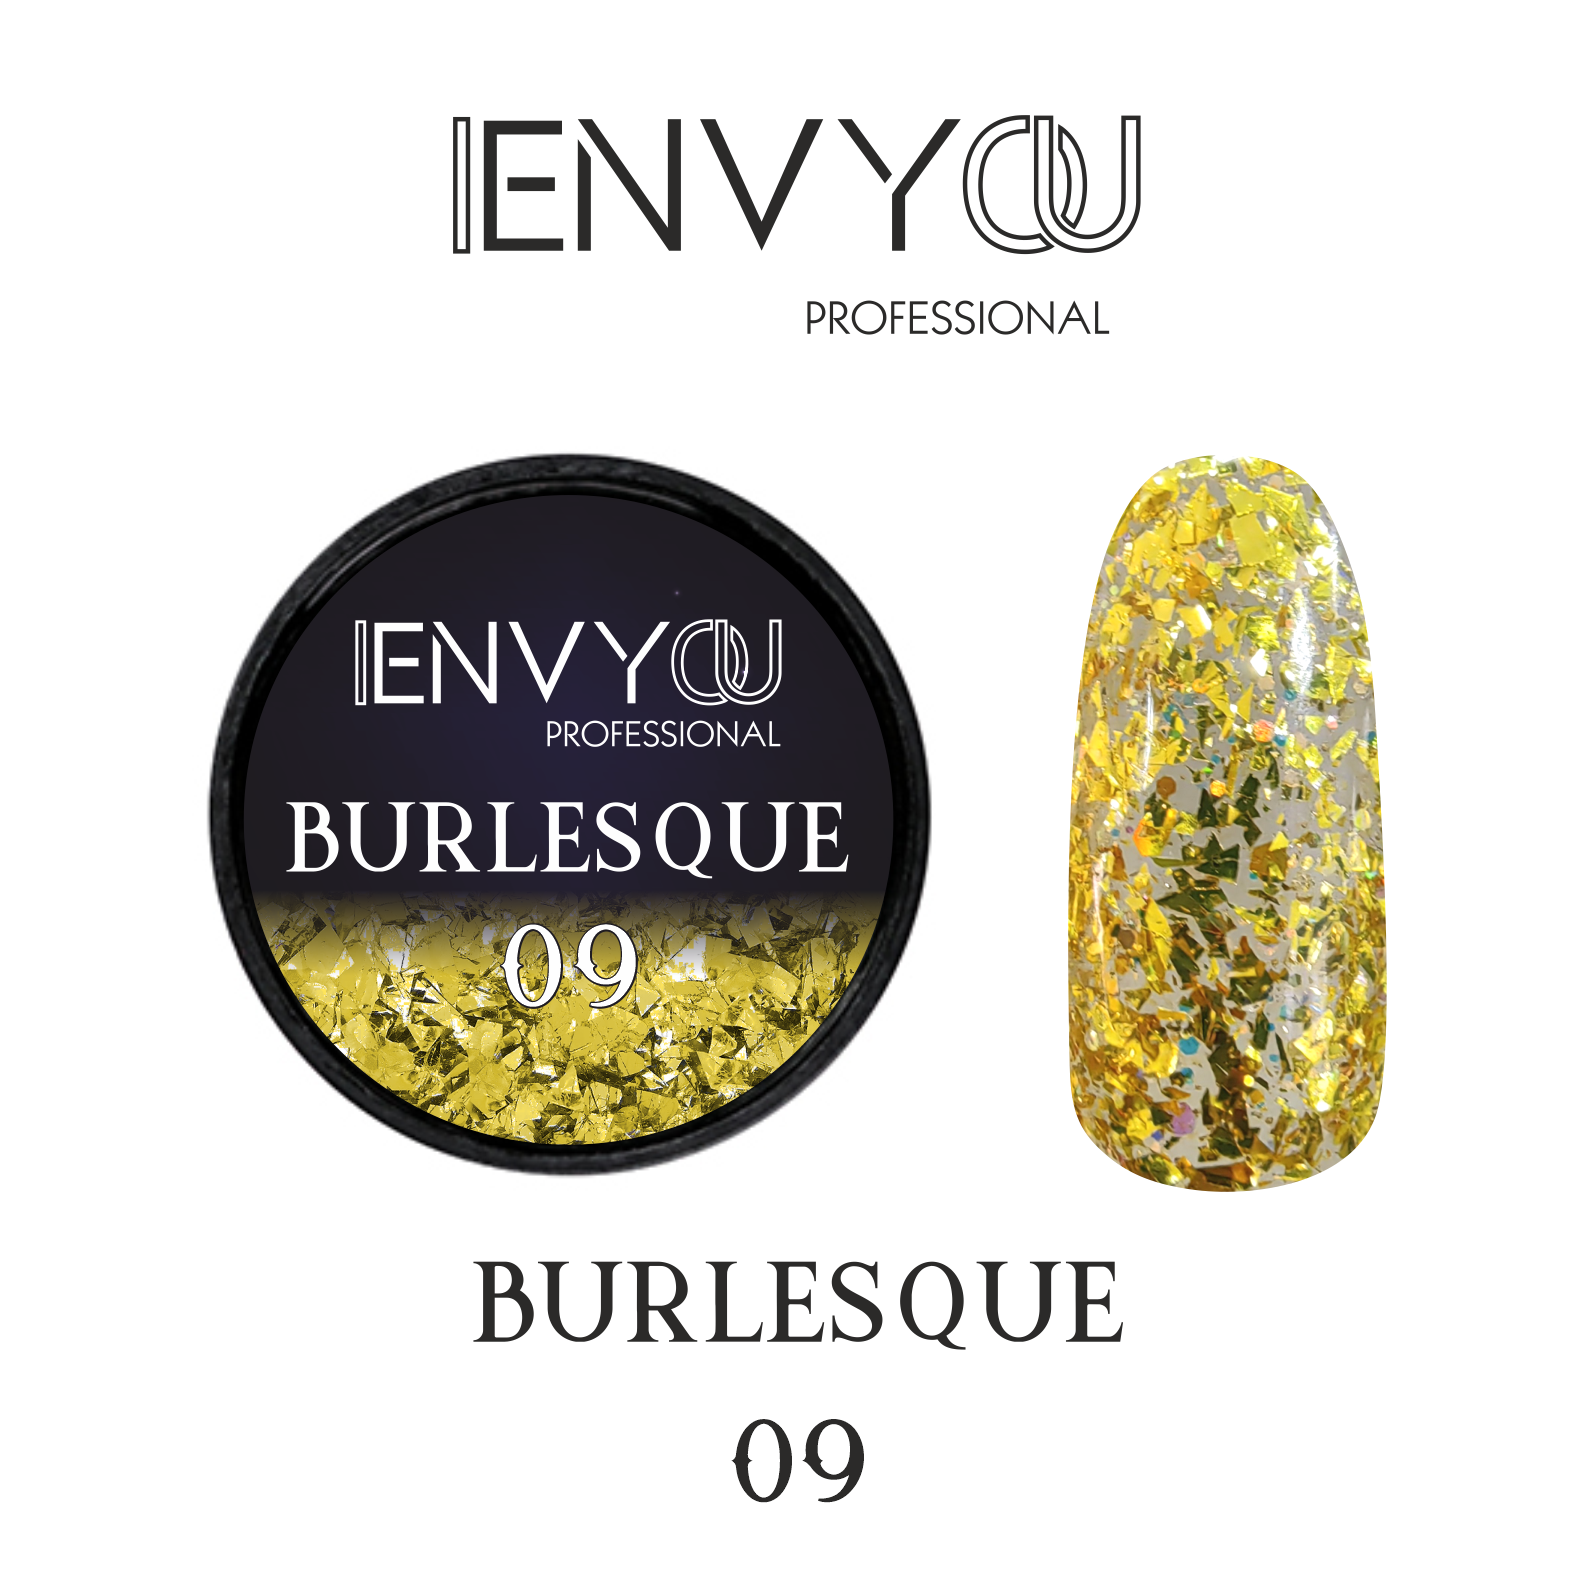 ENVY Burlesque 09 6g